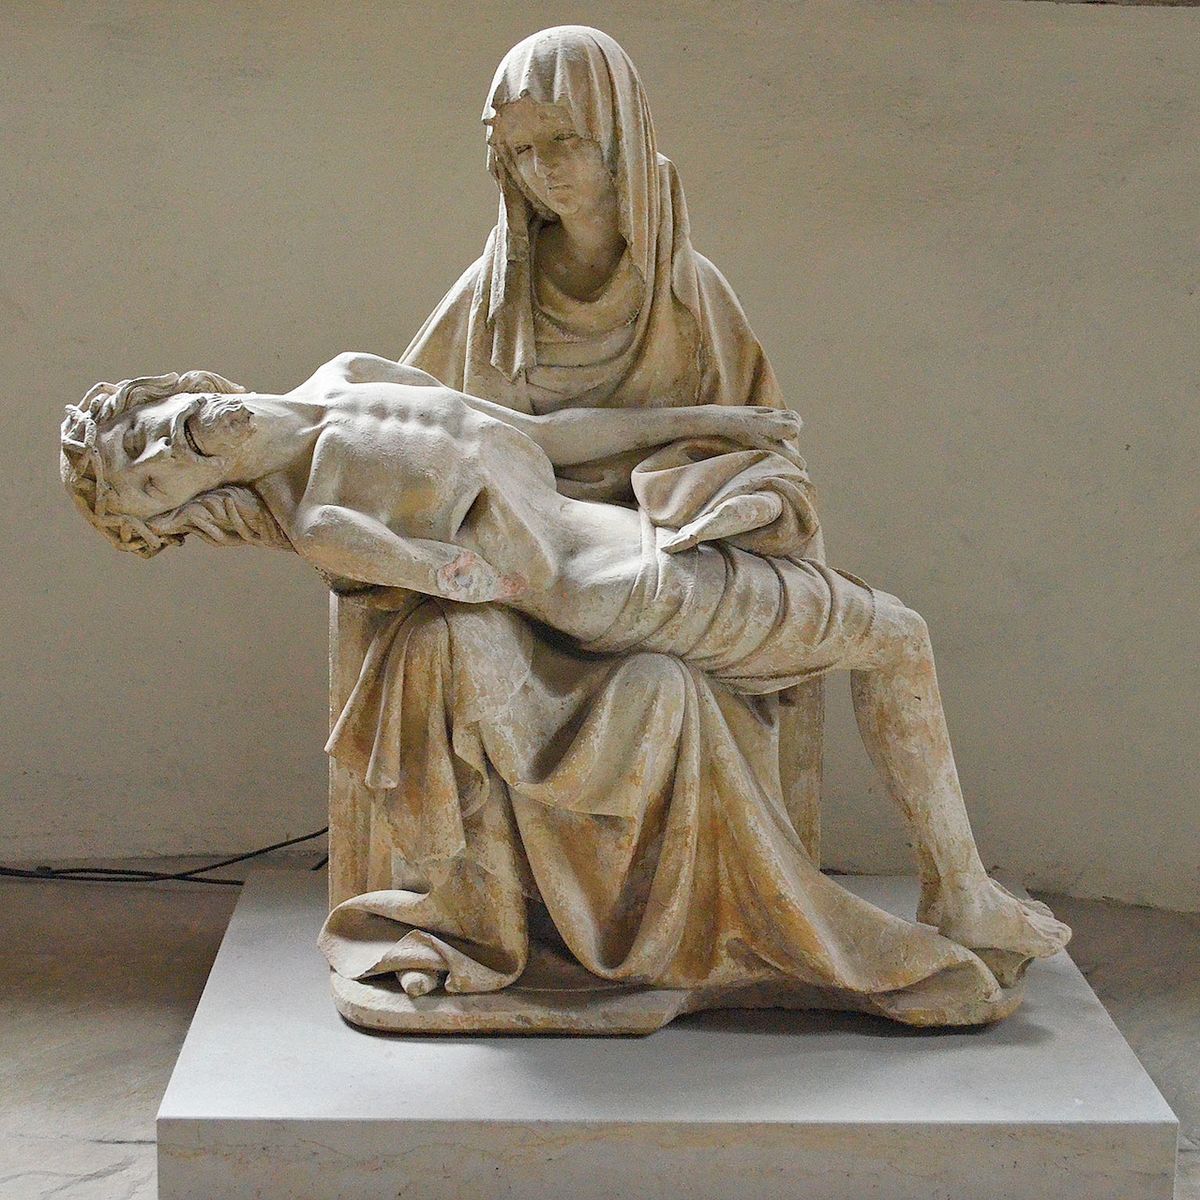 Pieta – Marie držící mrtvé tělo Krista byla vedle stojící madony druhým hlavním tématem krásného stylu.